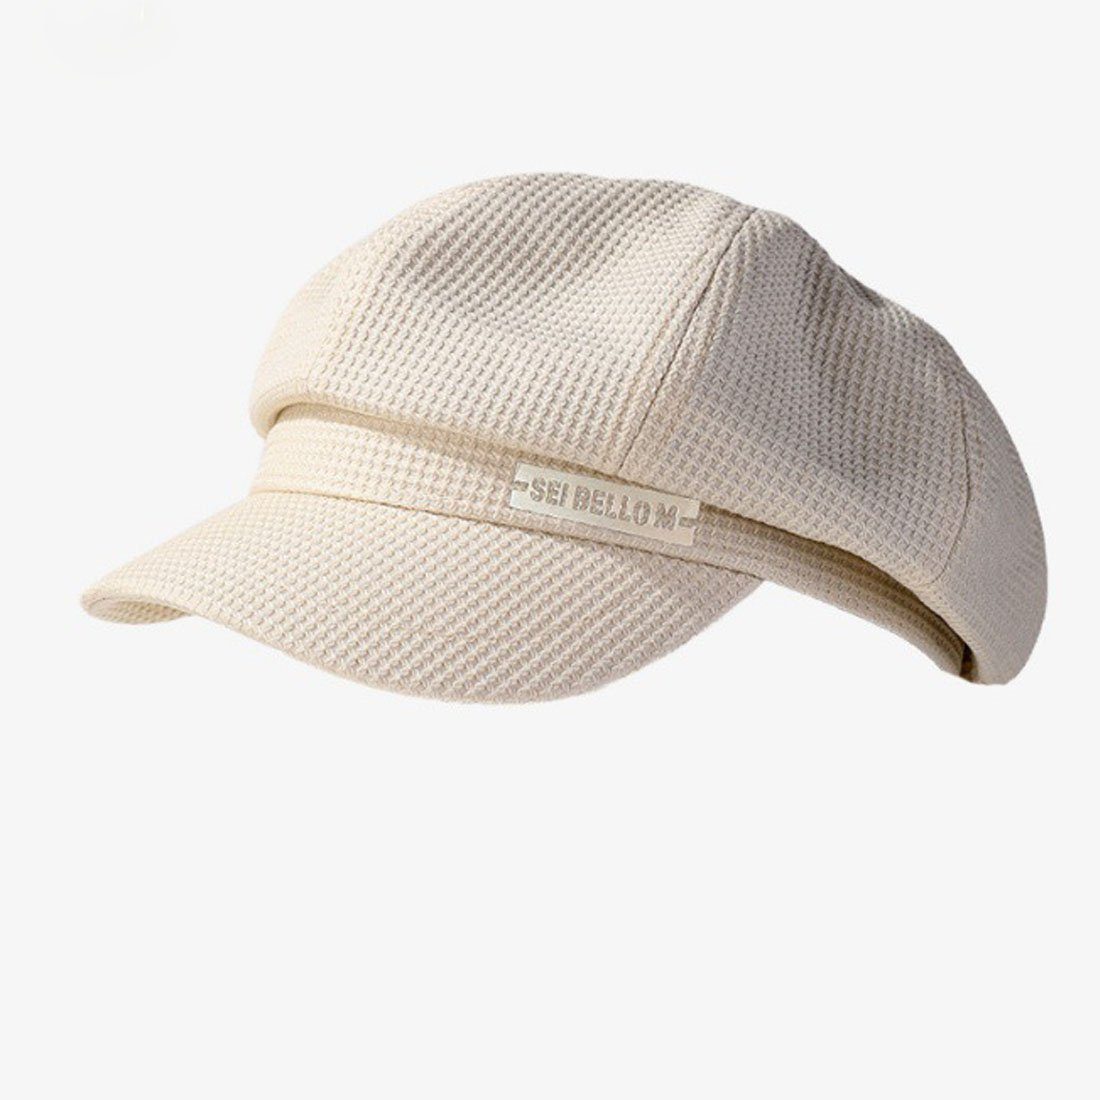 Mode lässige Beret, britischen Retro Hut DÖRÖY achteckigen Weiß Damen Plaid Baskenmütze Hut,